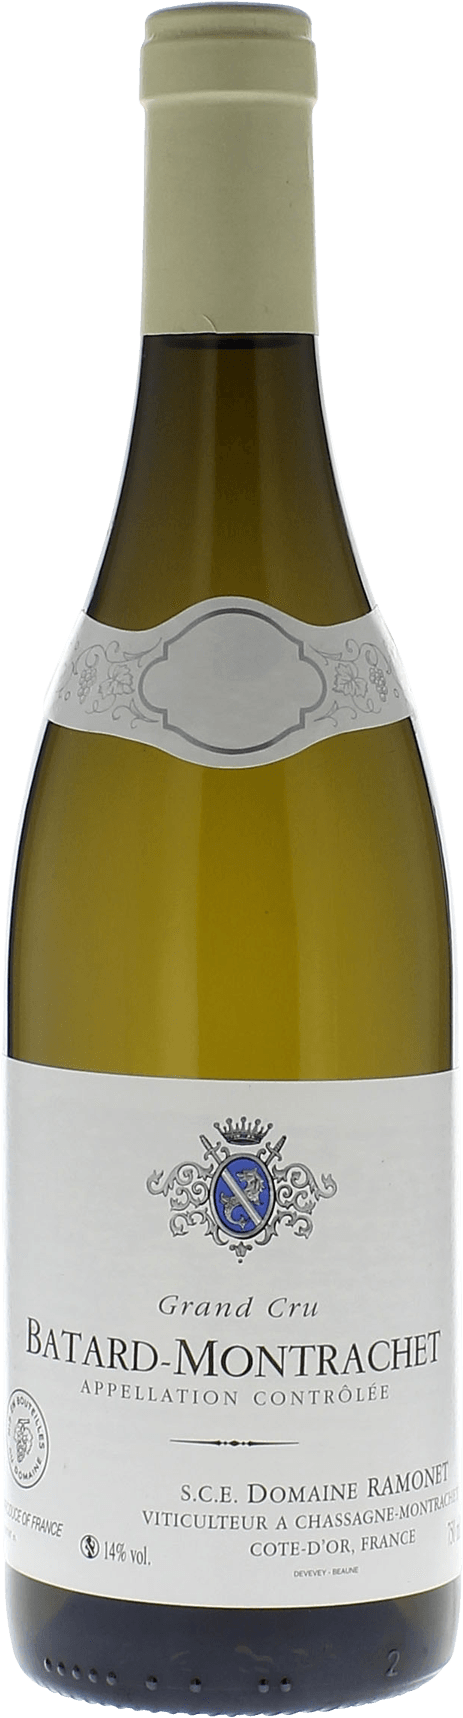 Batard montrachet 2015 Domaine RAMONET, Bourgogne blanc